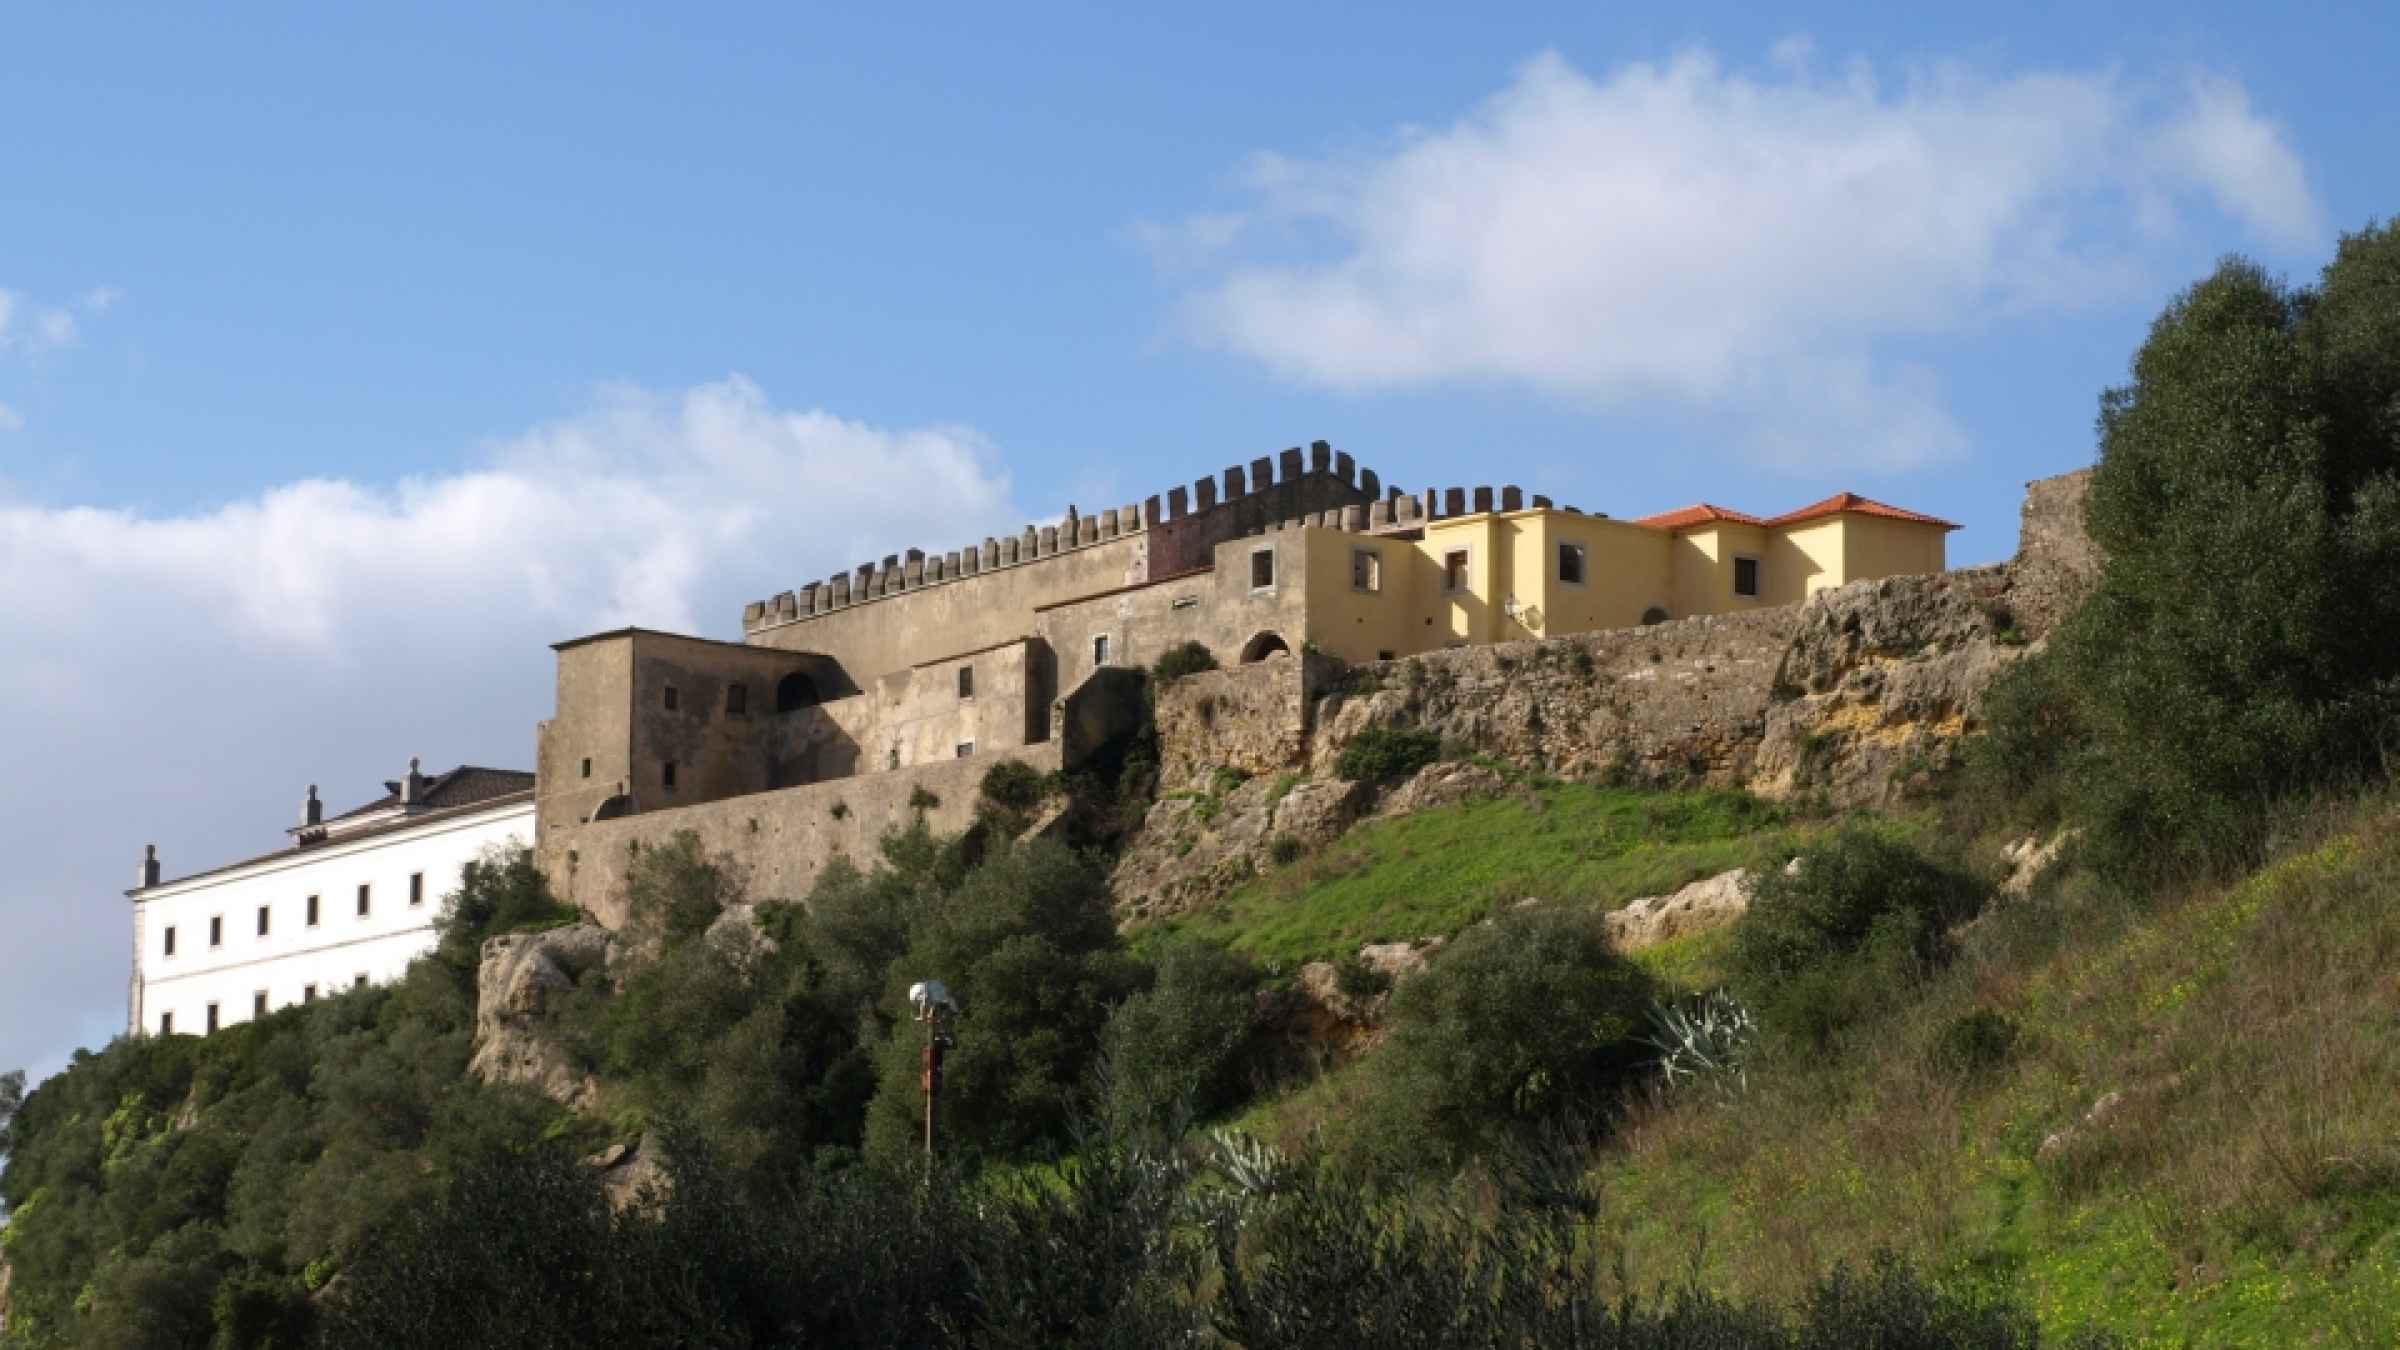 10 Best Day Trips from Castelo de Palmela 2021 - Info & Tickets ...